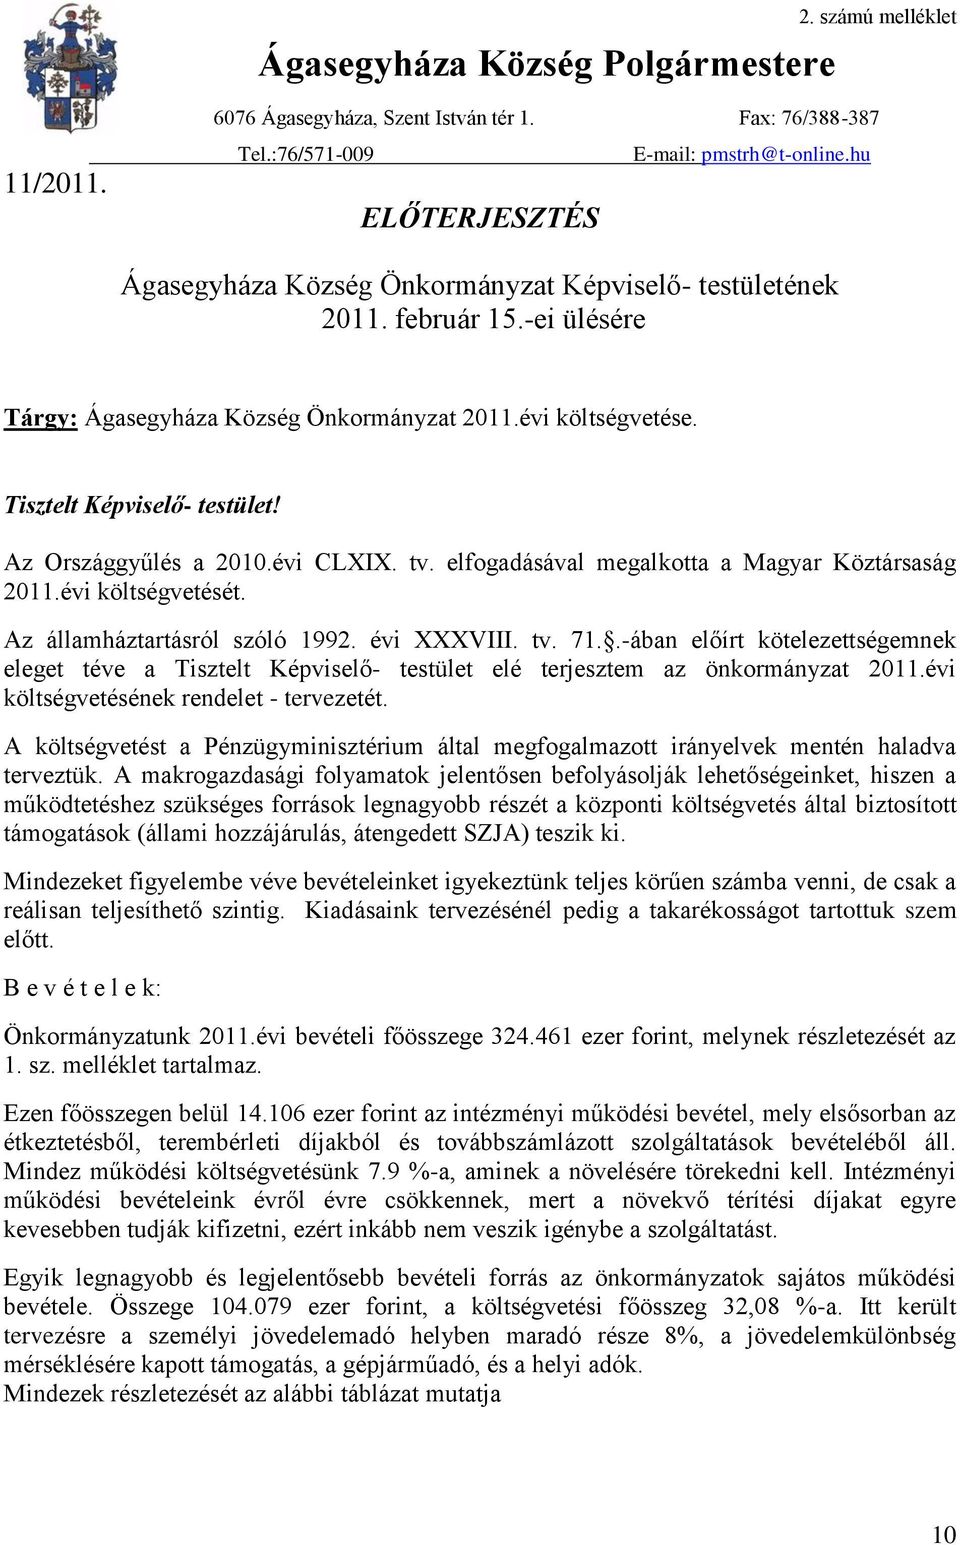 Az Országgyűlés a 2010.évi CLXIX. tv. elfogadásával megalkotta a Magyar Köztársaság 2011.évi költségvetését. Az államháztartásról szóló 1992. évi XXXVIII. tv. 71.